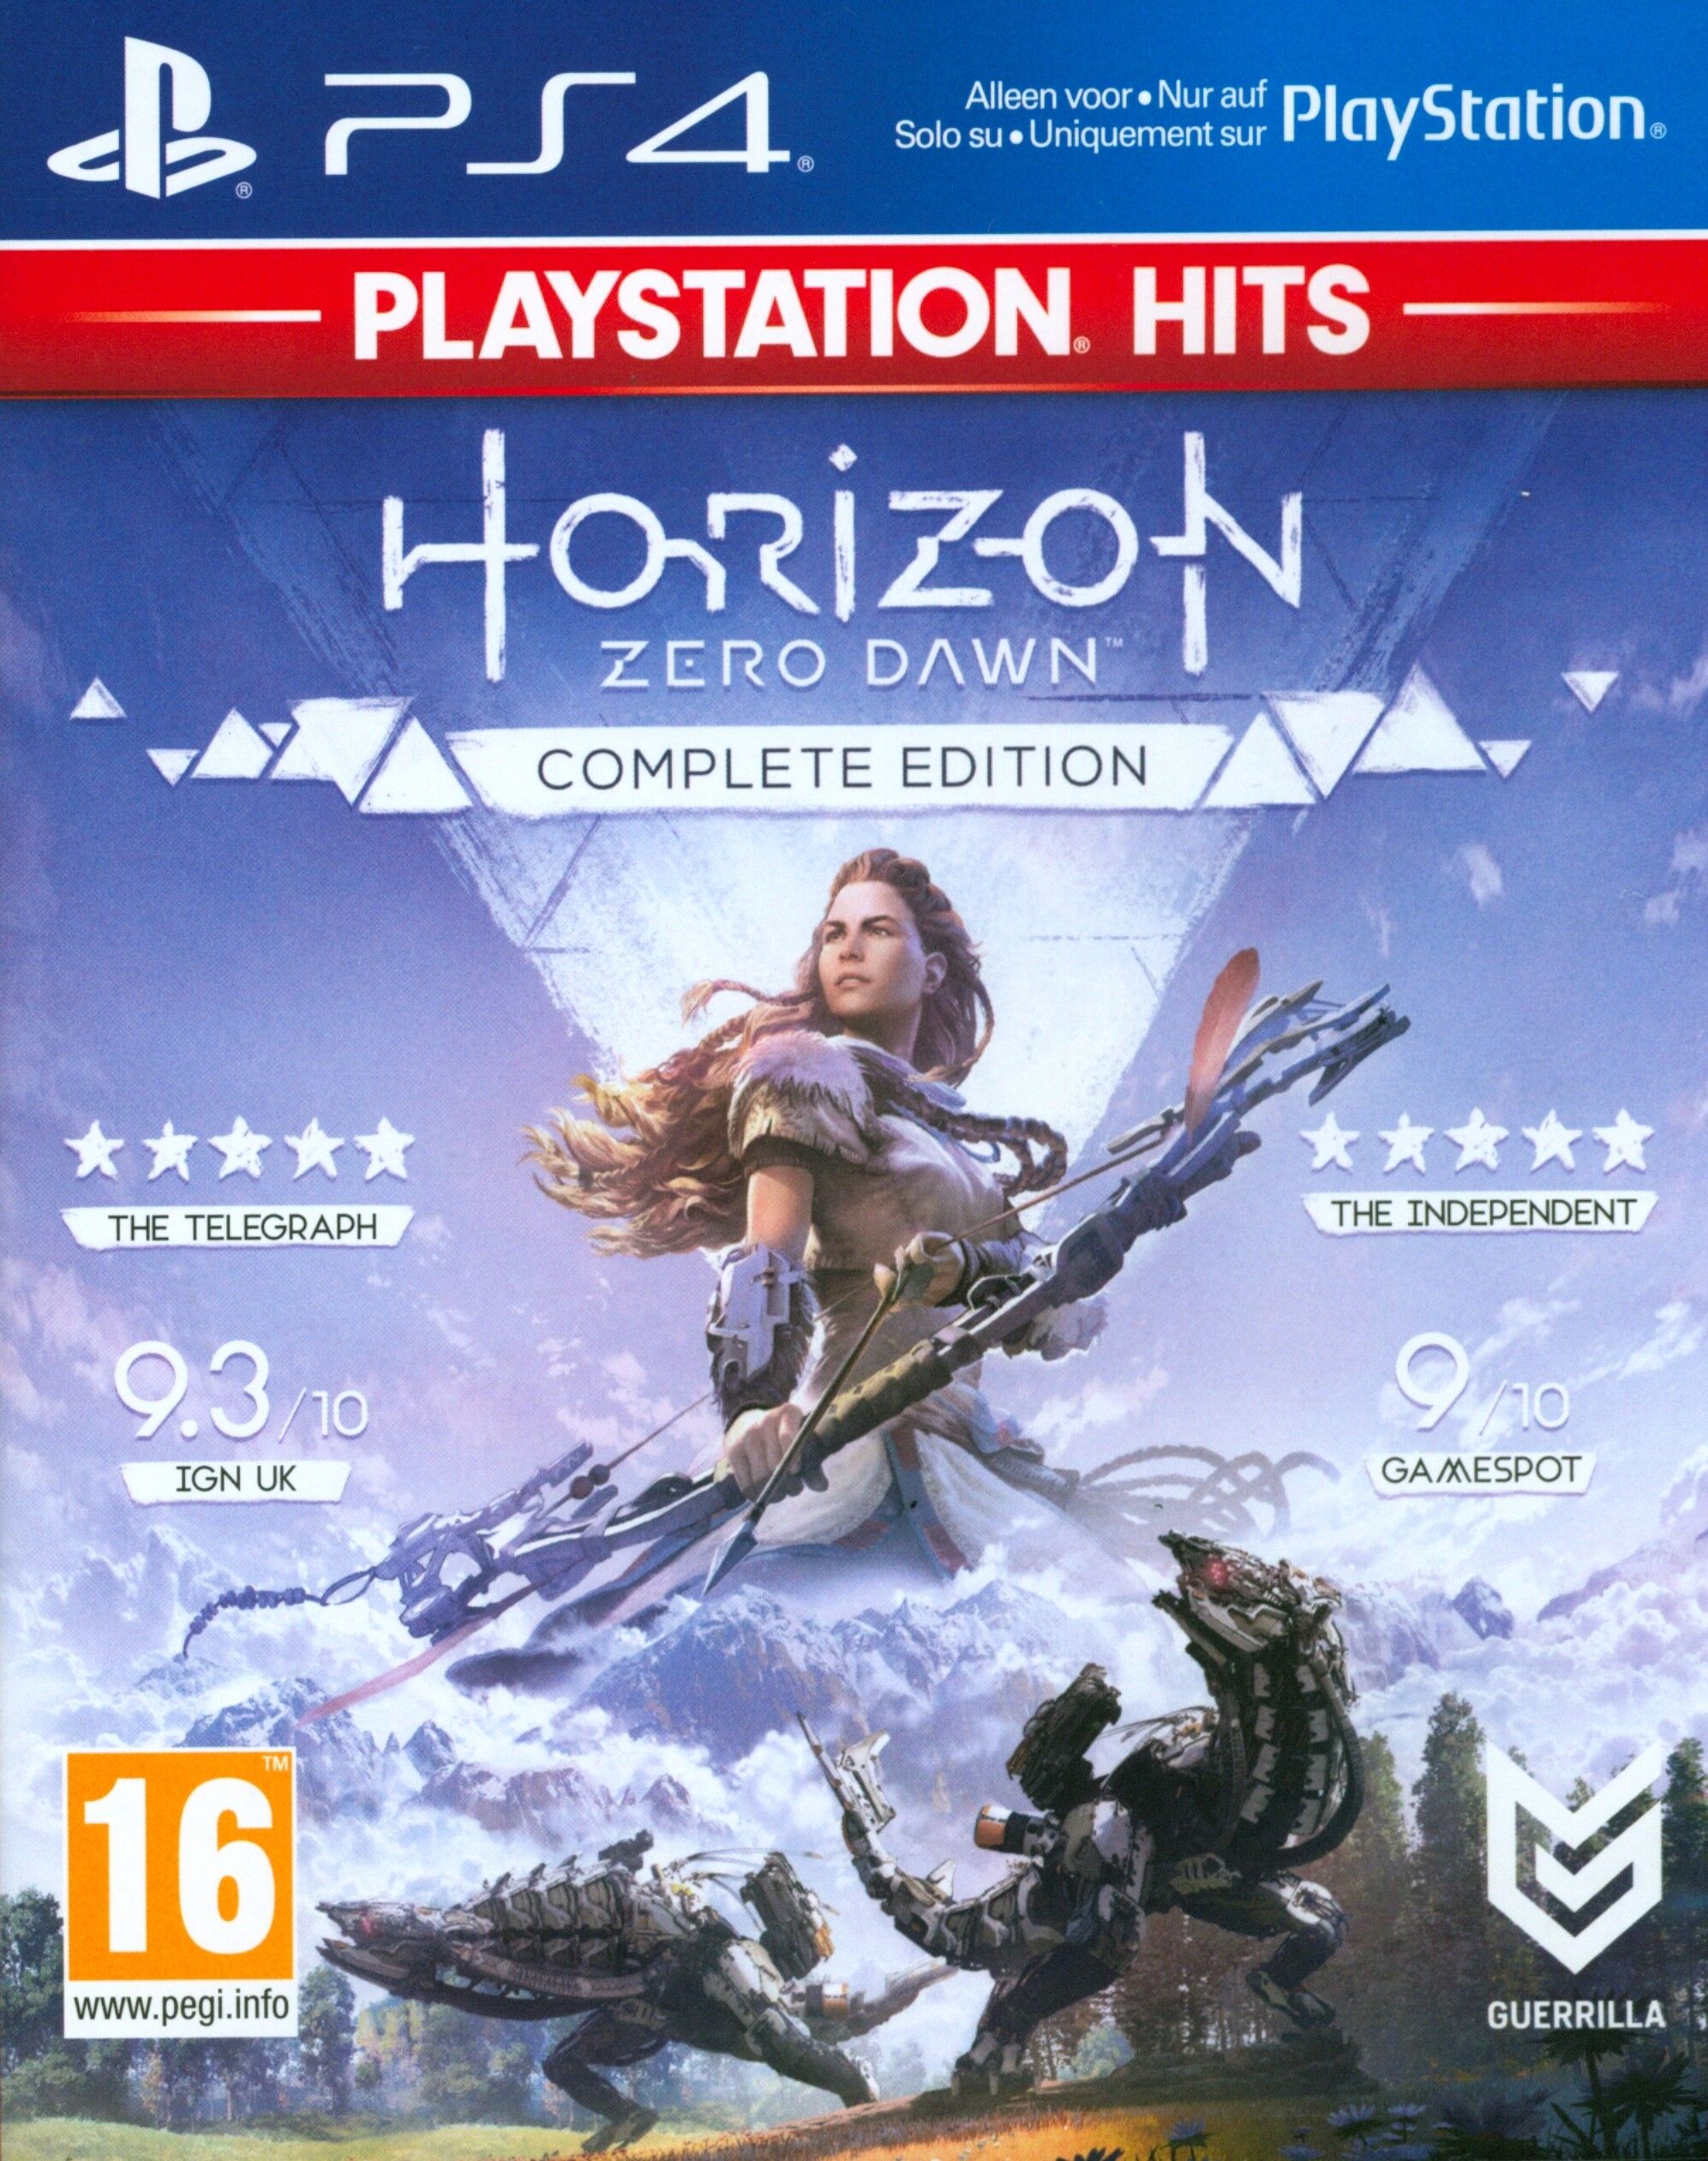 ak tronic Software & Sony - ak tronic - PlayStation Hits: Horizon Zero Dawn [PS4] (D/F/I)